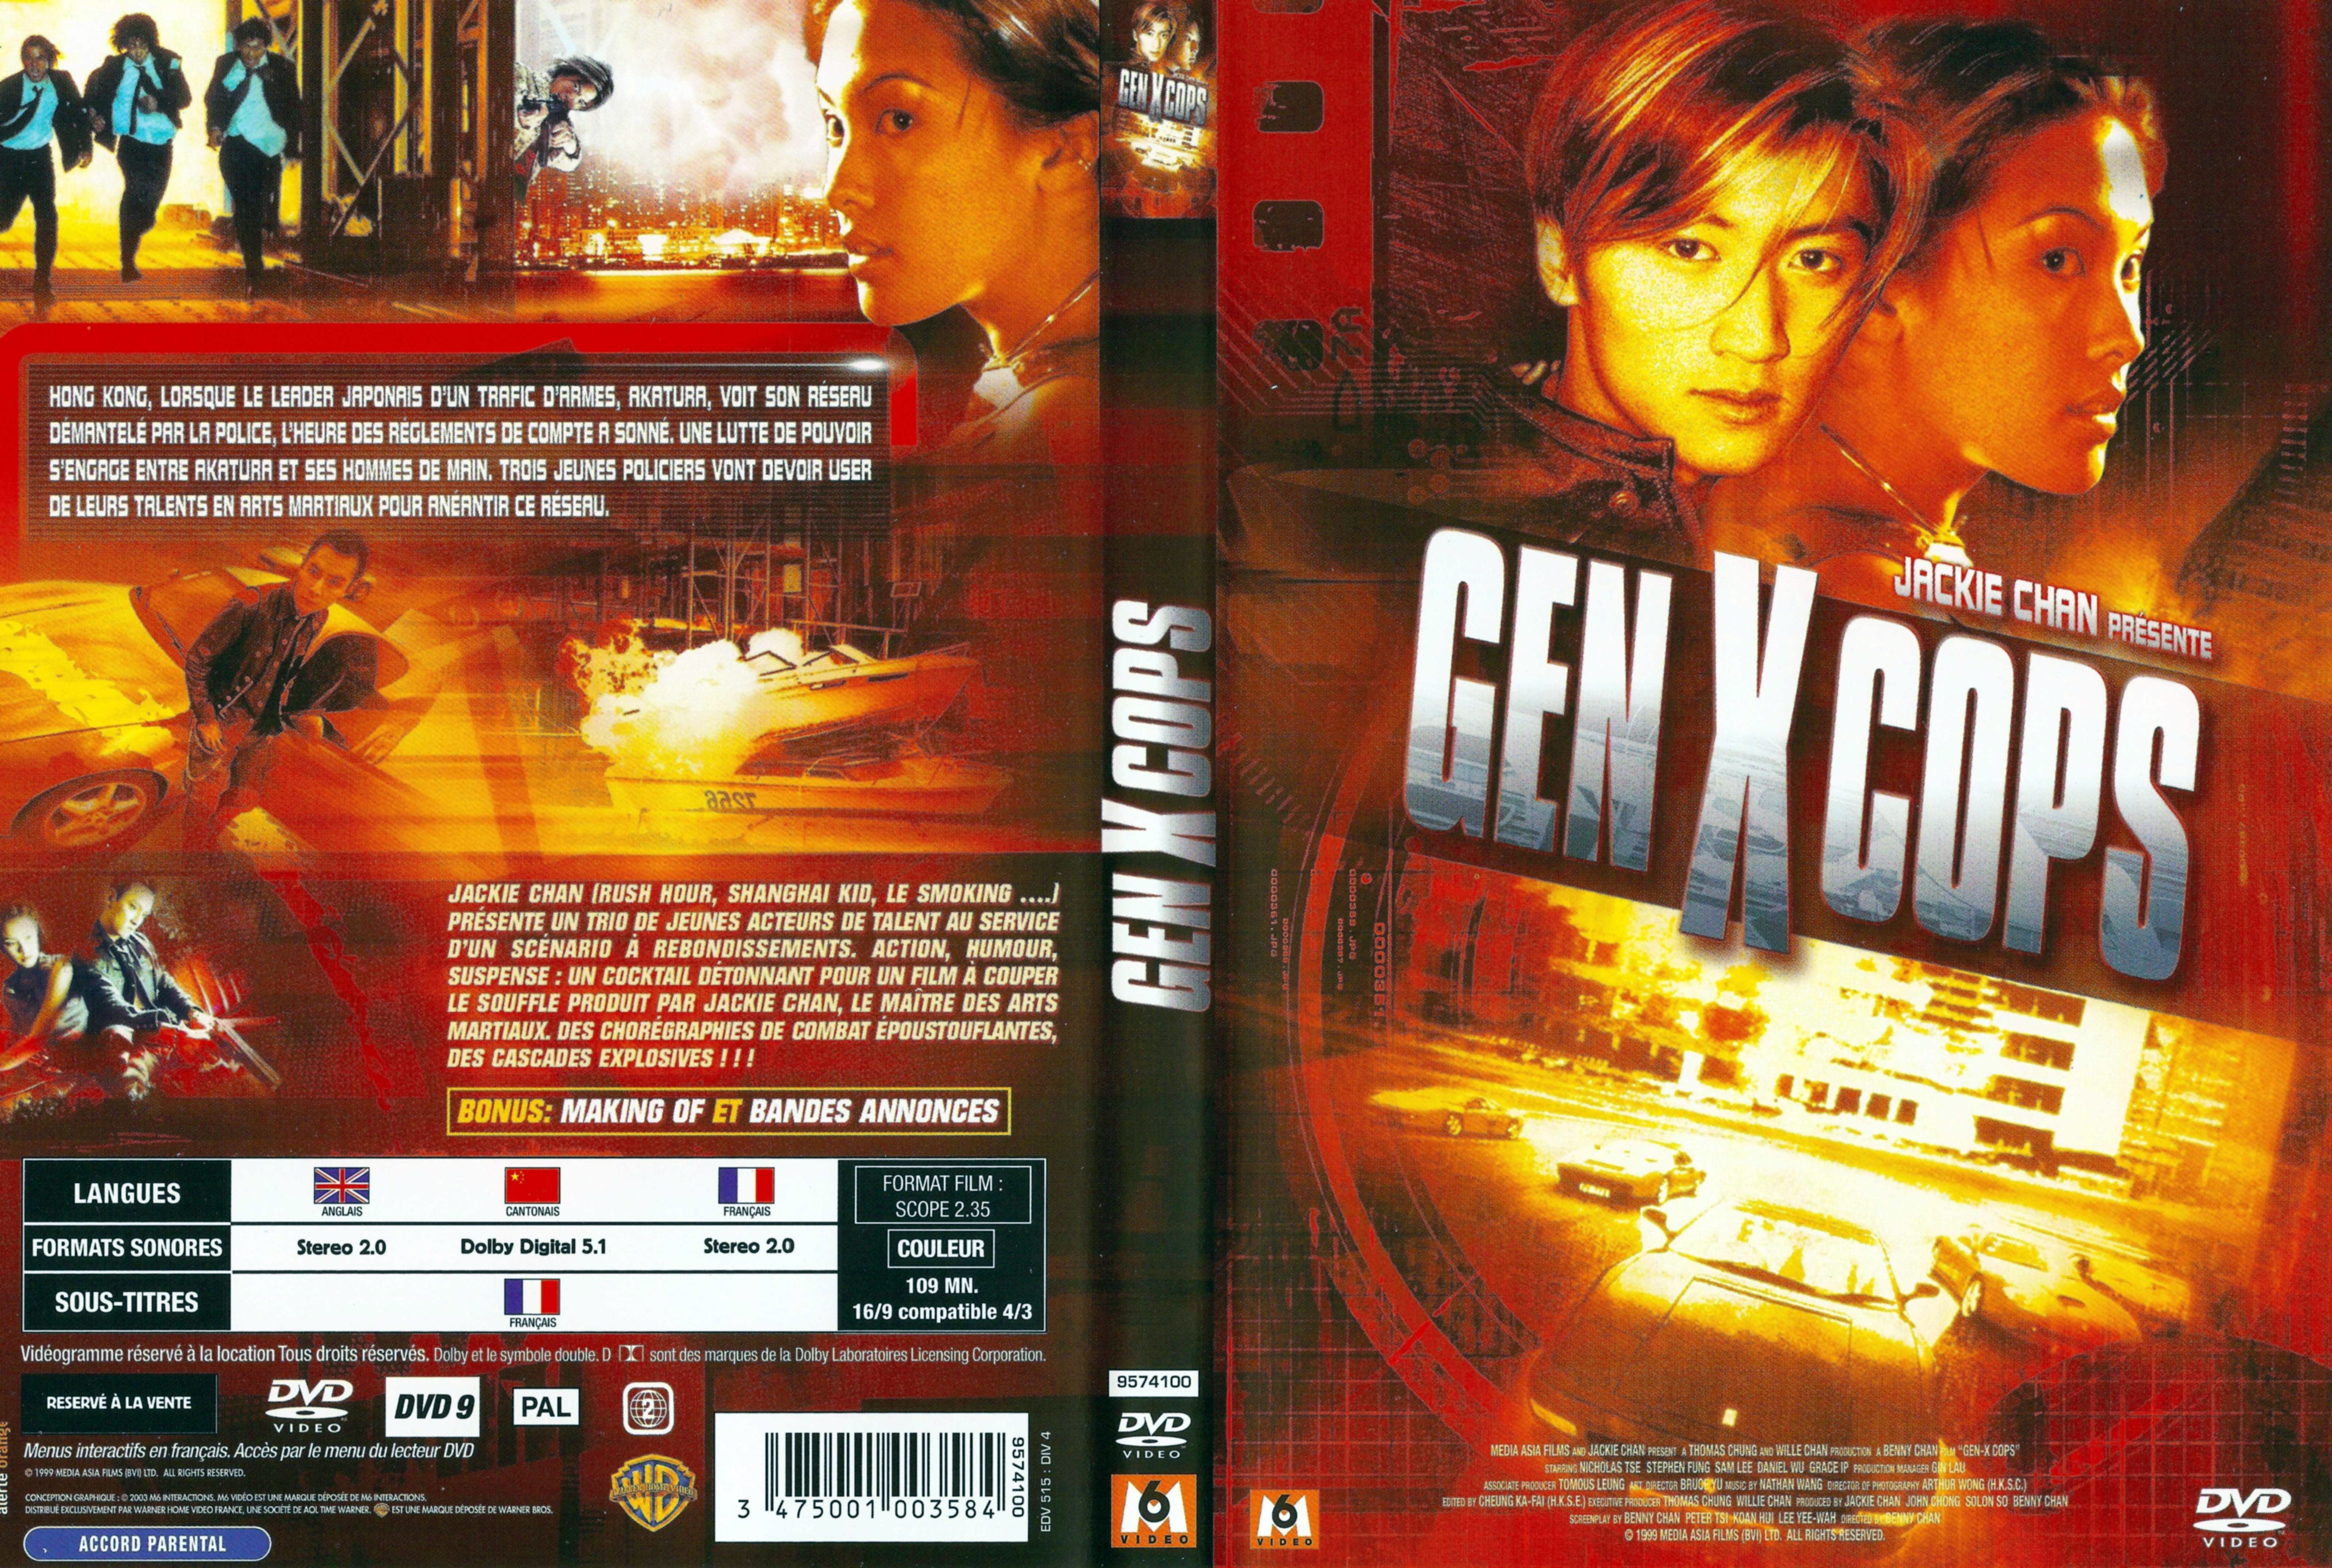 Jaquette DVD Gen X cops v2